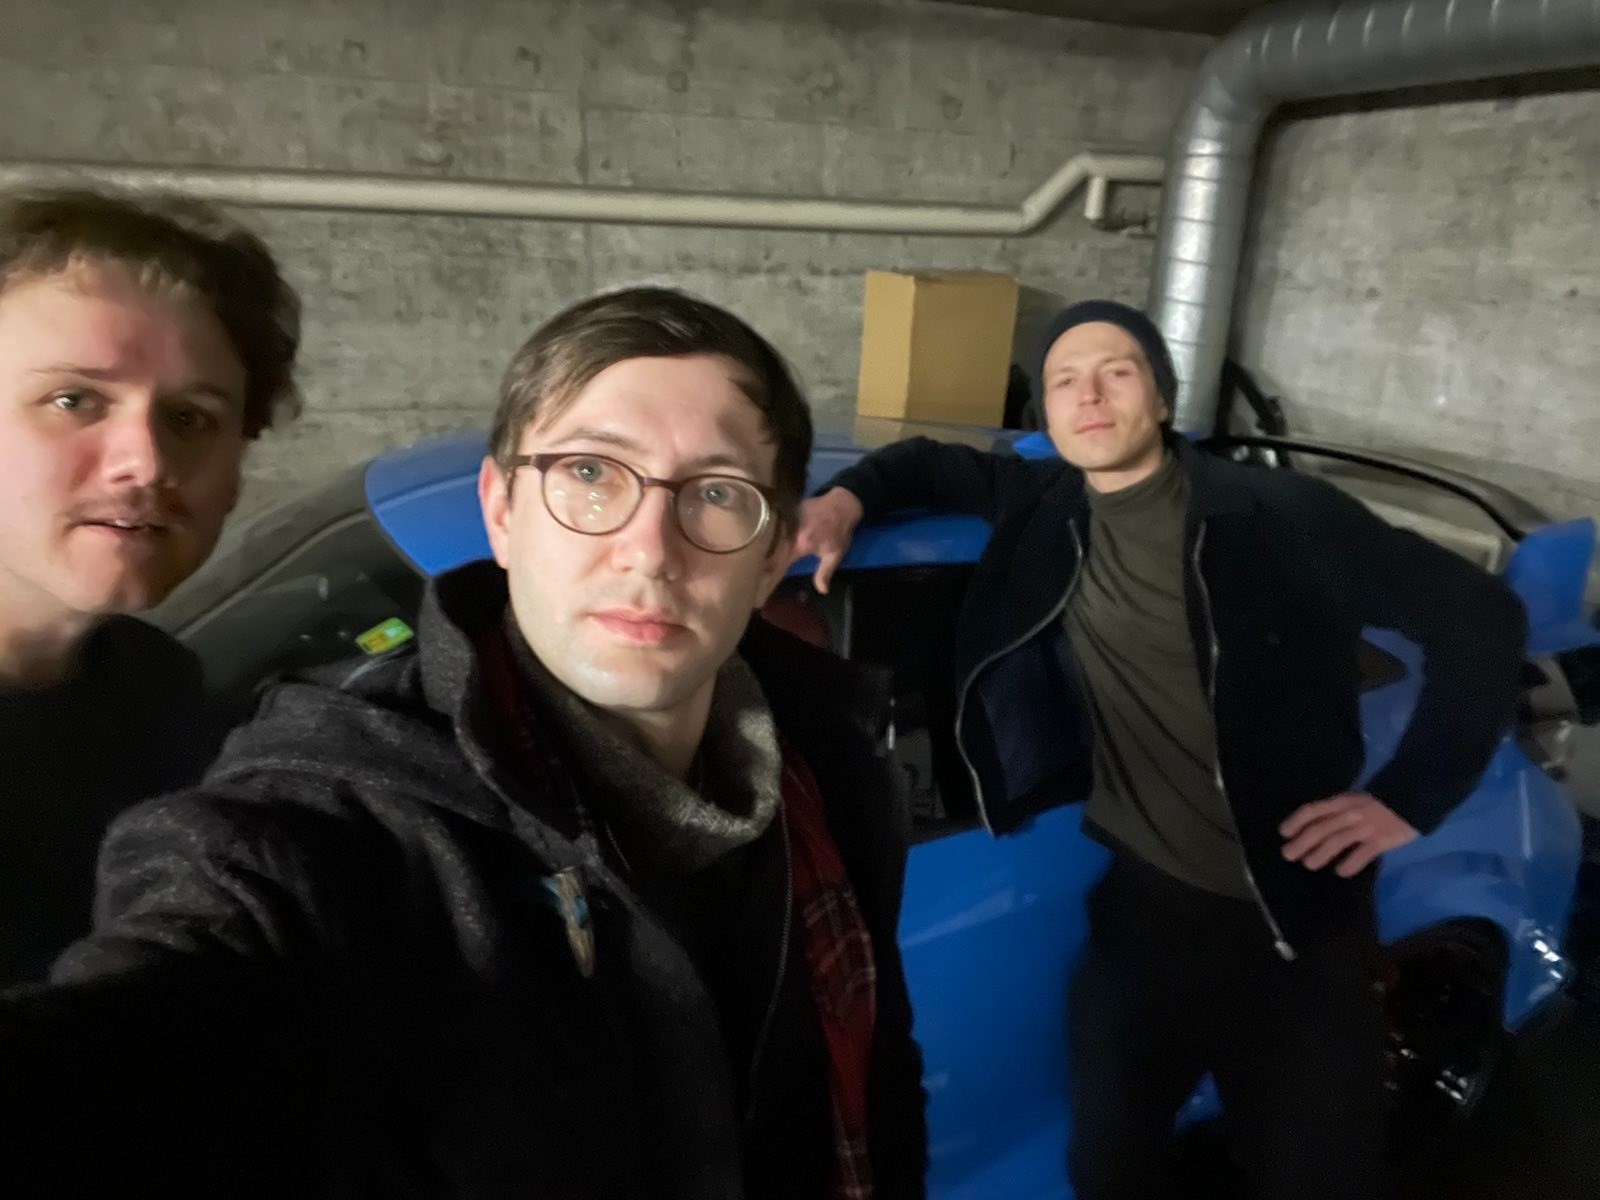 Der Raum ist eine Garage, im Hintergrund ein blaues Auto. Drei Personen schauen in die Kamera.